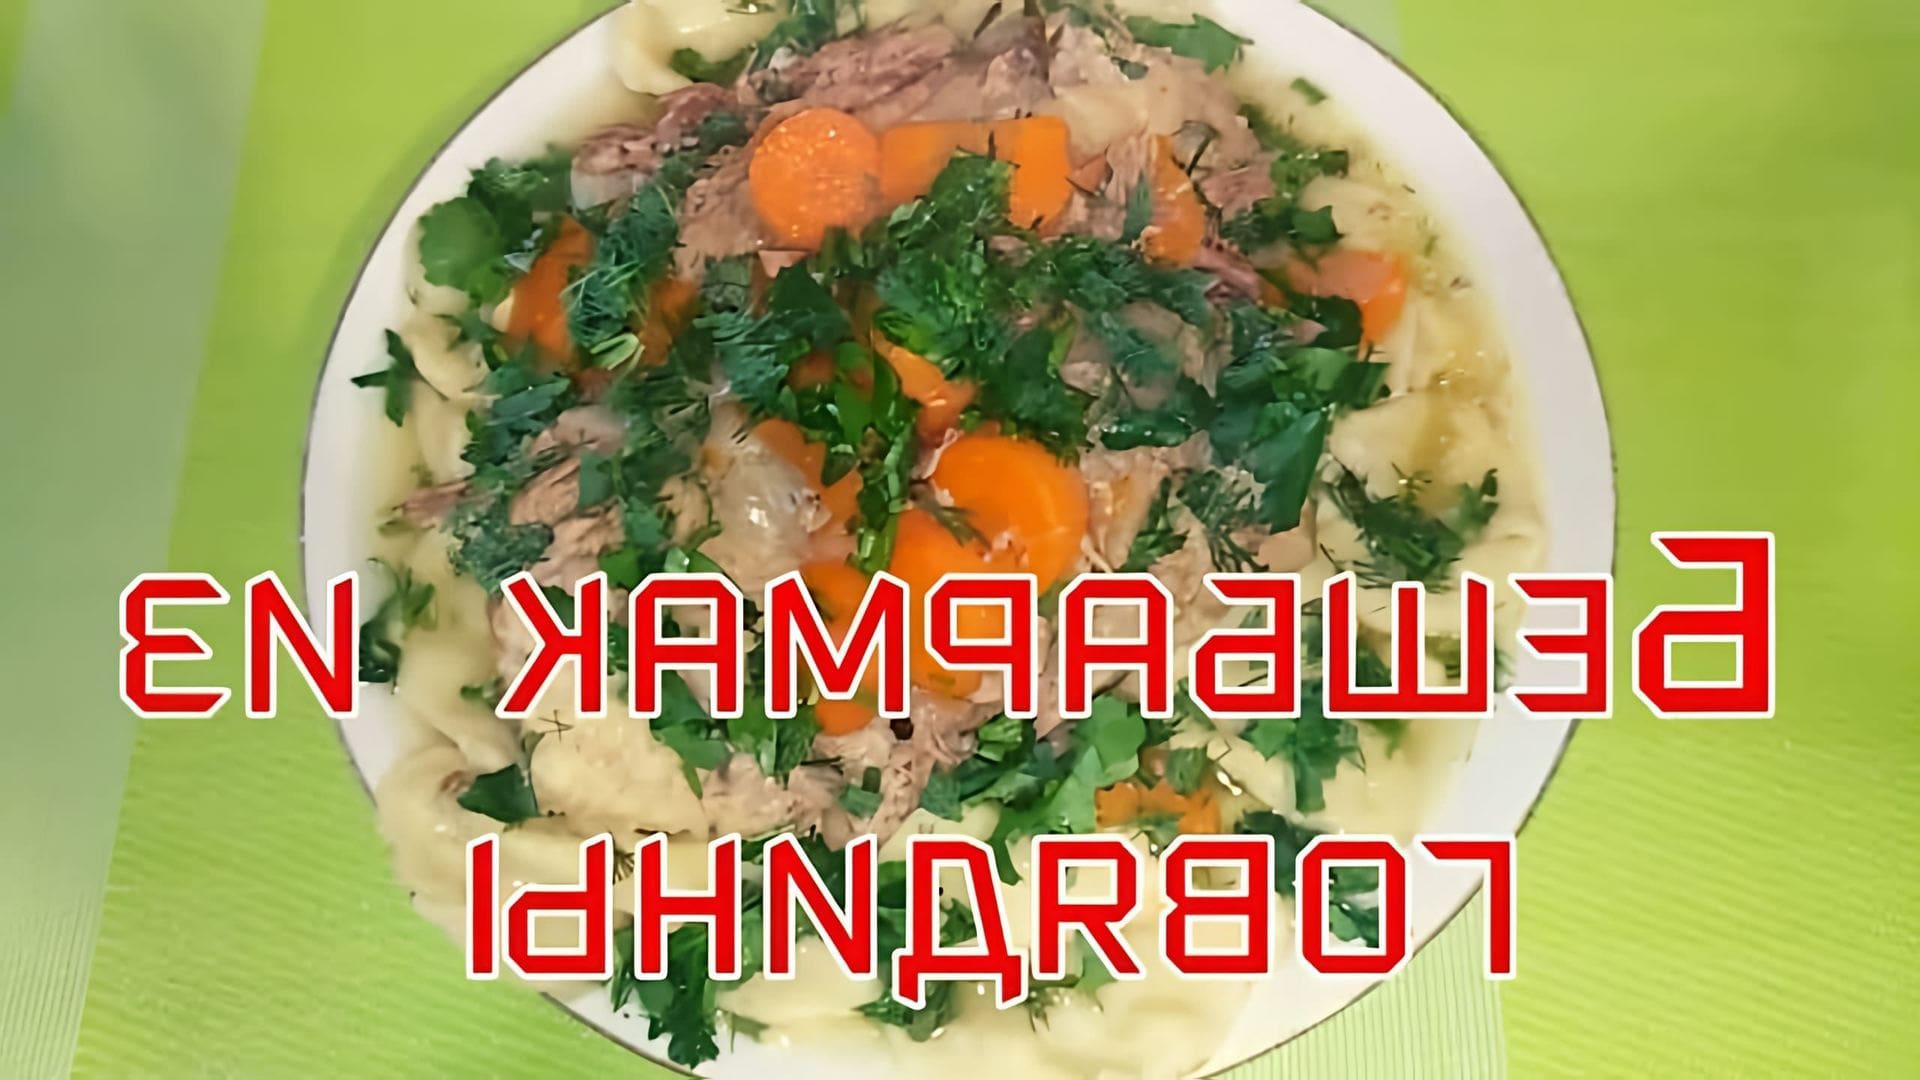 Бешбармак с говядиной классический рецепт - это видео-ролик, который демонстрирует процесс приготовления традиционного блюда